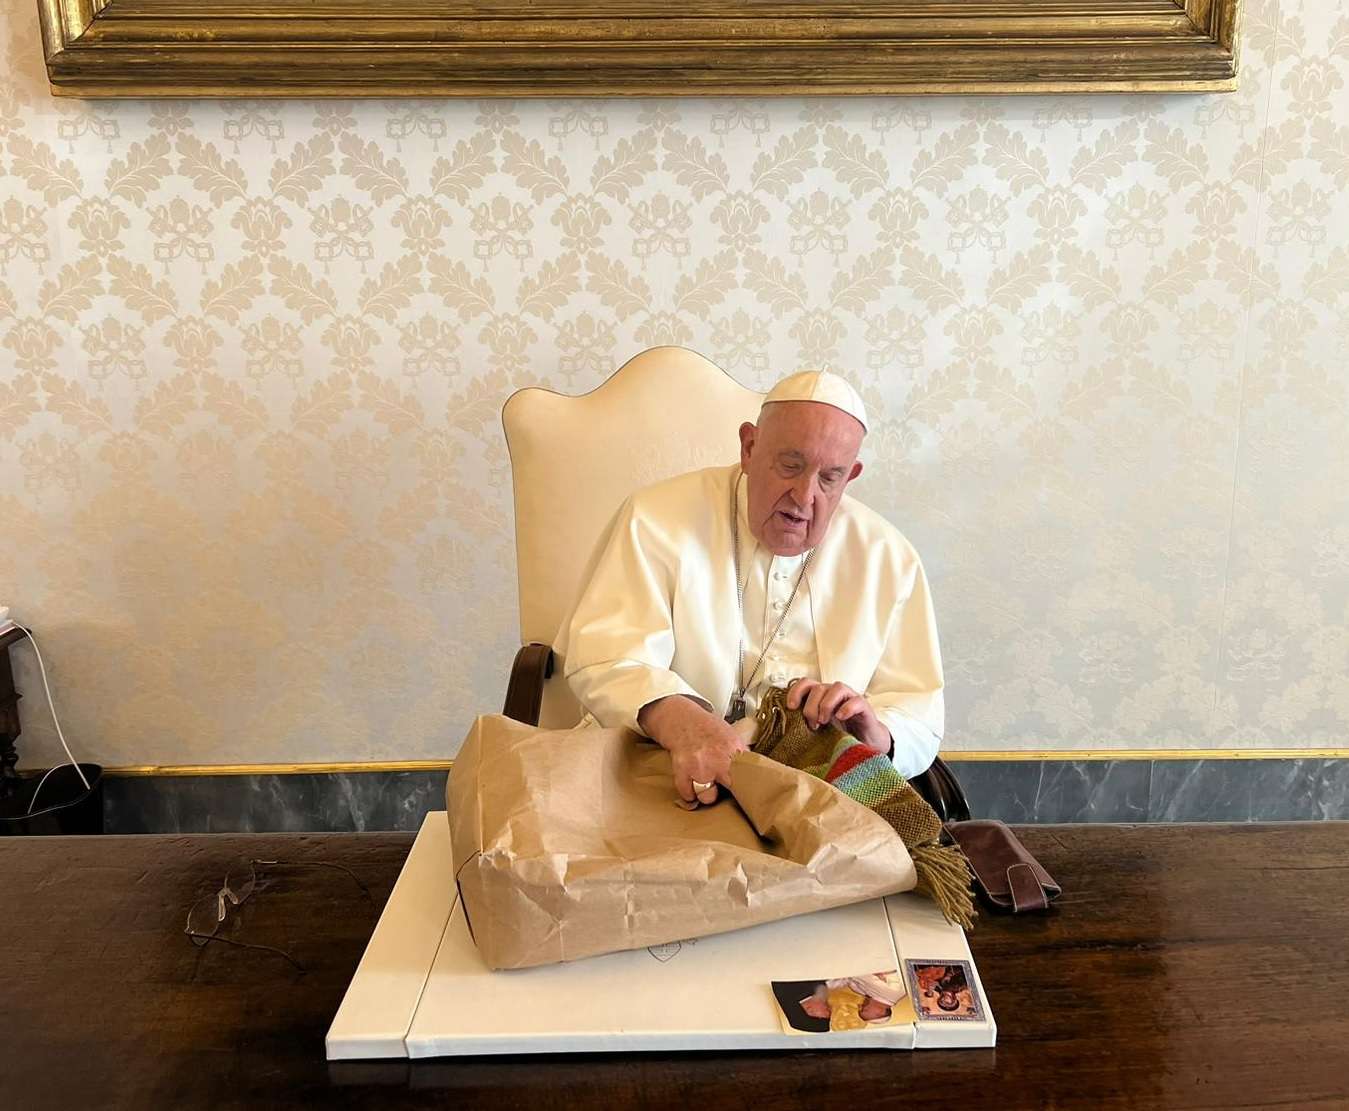 El papa Francisco recibió el Poncho Santafesino, confeccionado por tejedoras norteñas